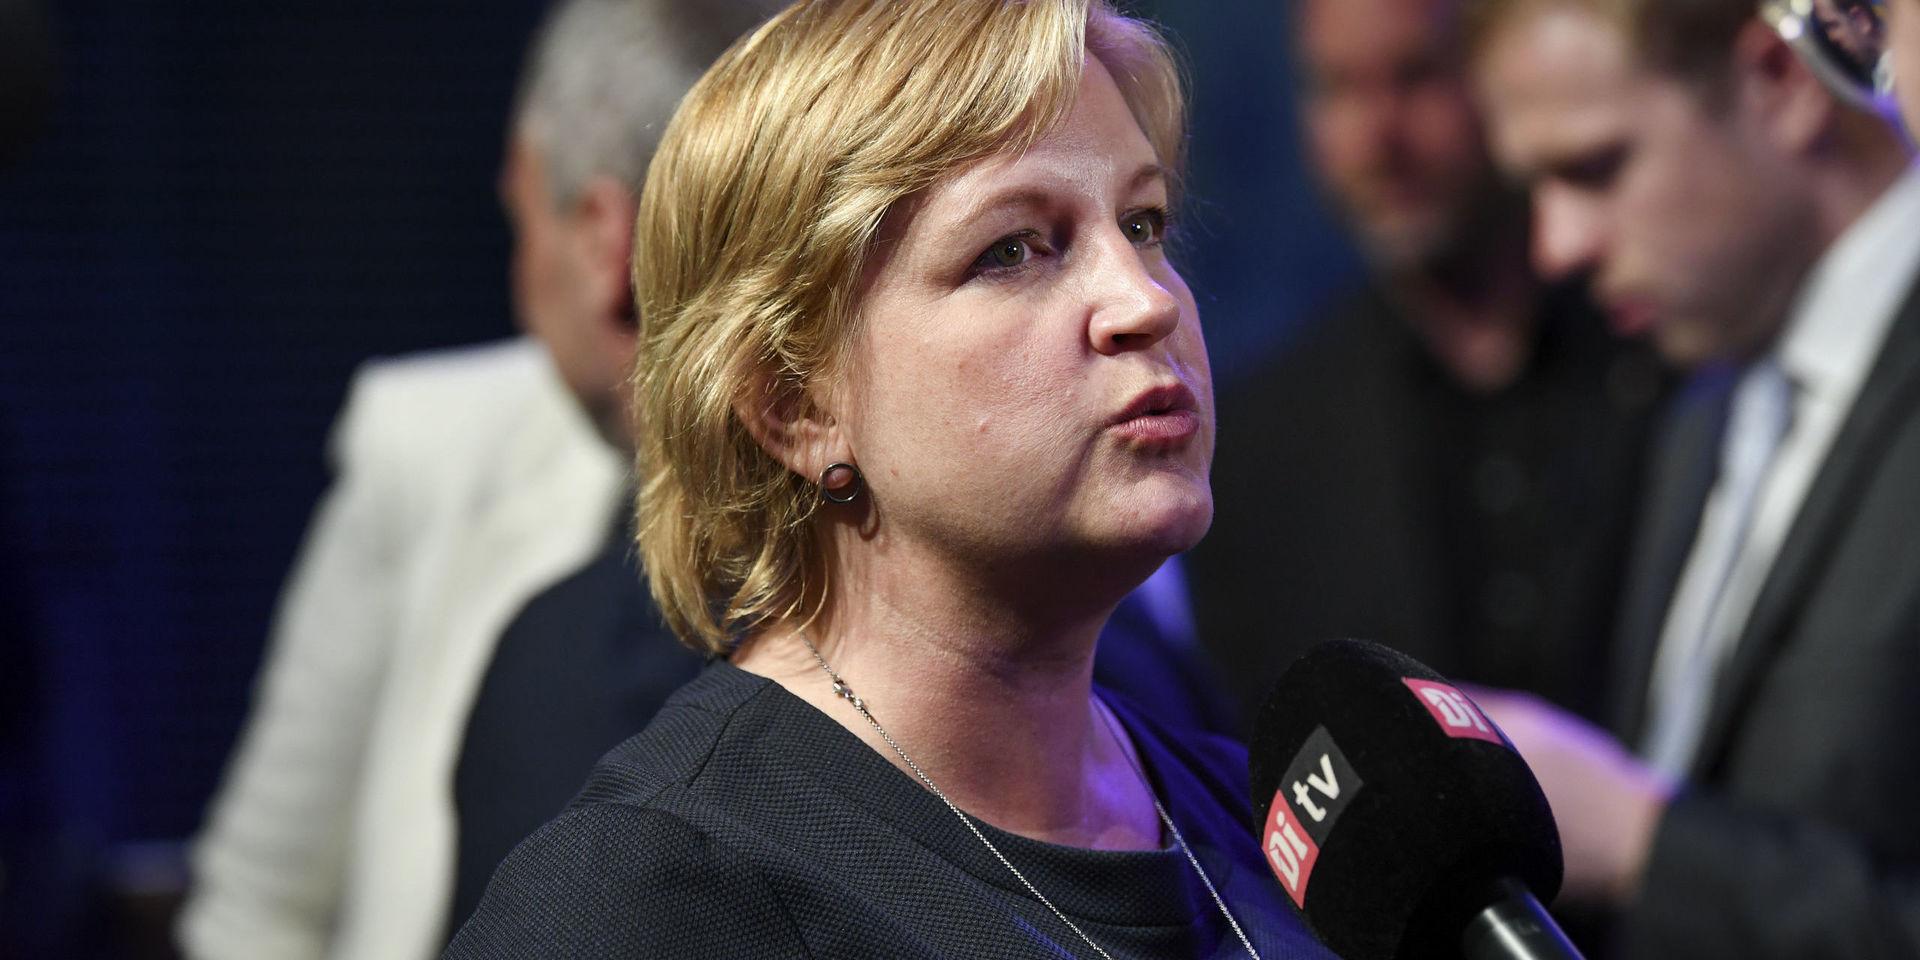 Liberalerna dippade rejält i valet. Men som det ser ut nu kan Karin Karlsbro ta plats i parlamentet.